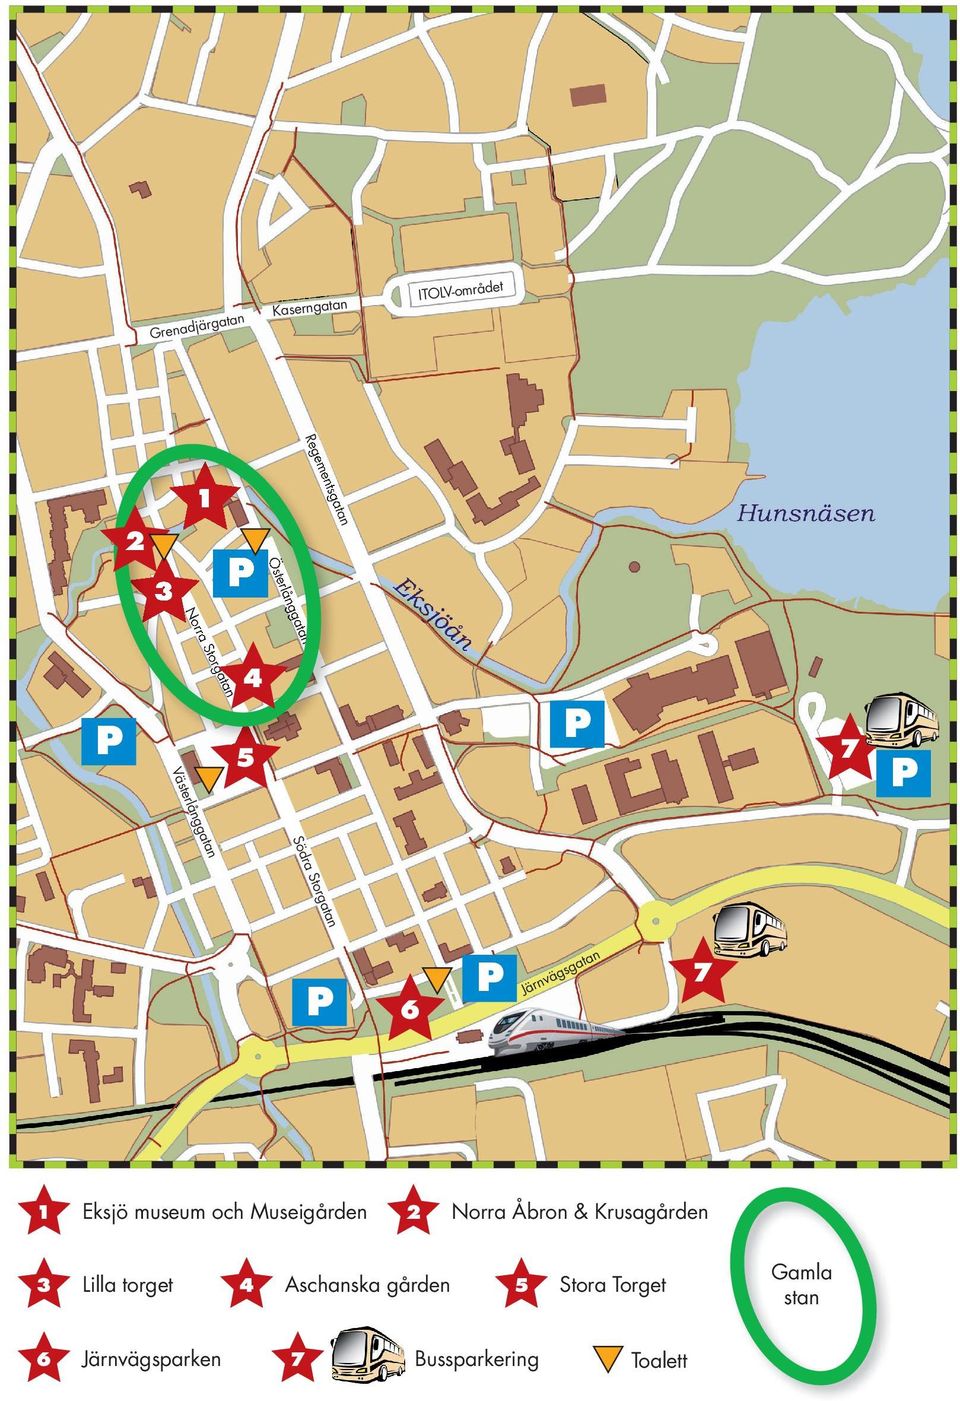 Jä 7 1 Eksjö museum och Museigårde 3 Lilla torget 6 Järvägsparke 6 2 a ga4t Aschaska